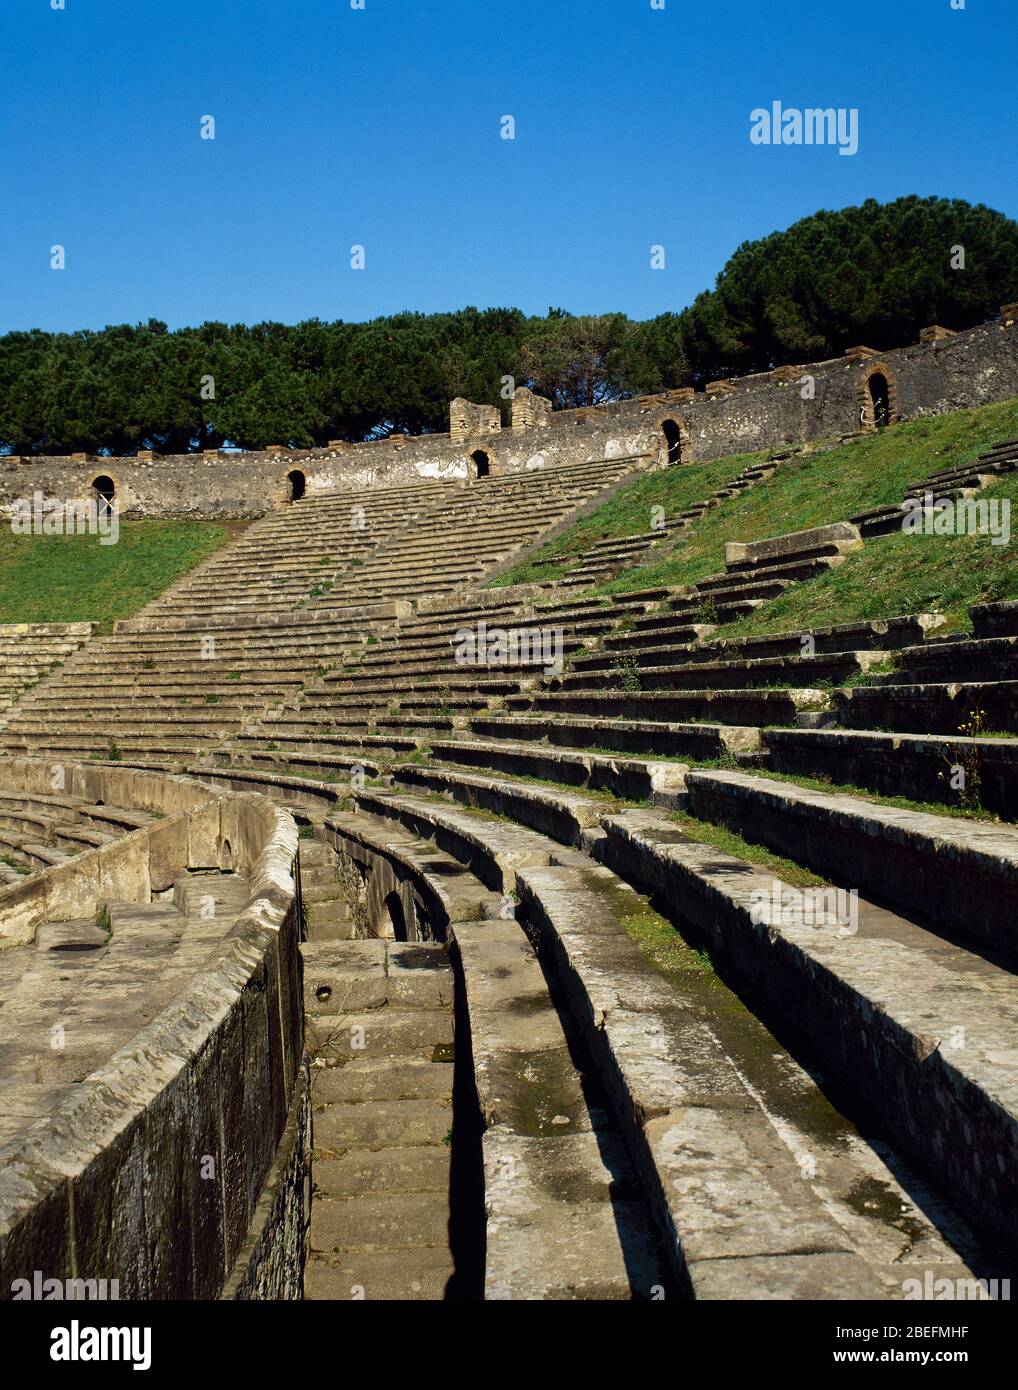 The Amphitheatre. Stock Photo